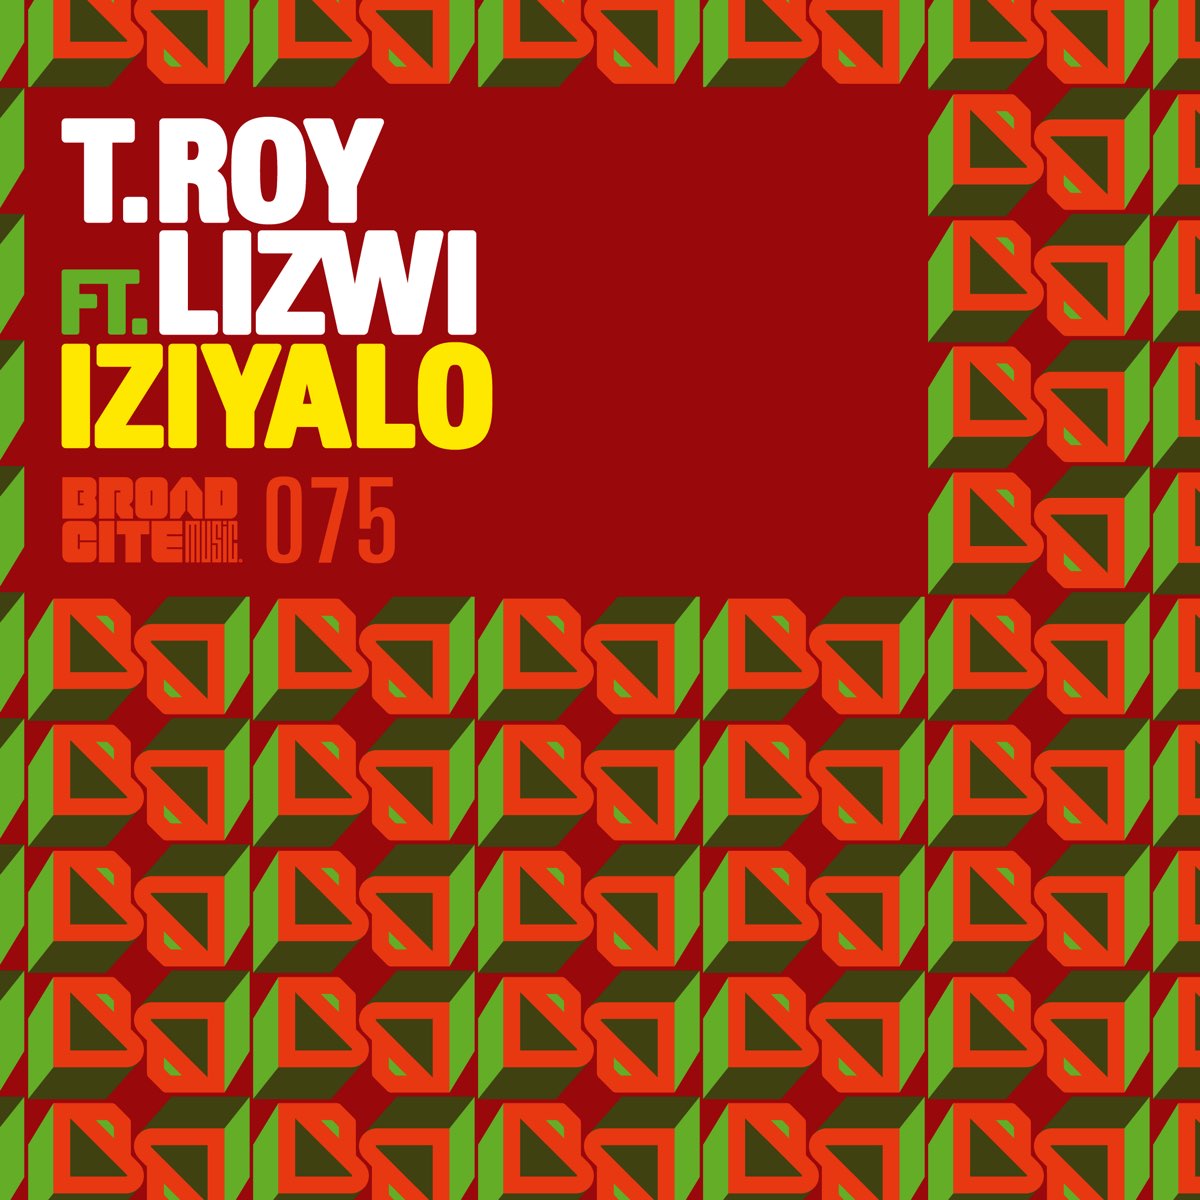 Amathole feat lizwi рингтон. T'Roy. Lizwi. S'T'Roy Mix. Waves & WAVS (feat. Lizwi) от Ahmed Spins.